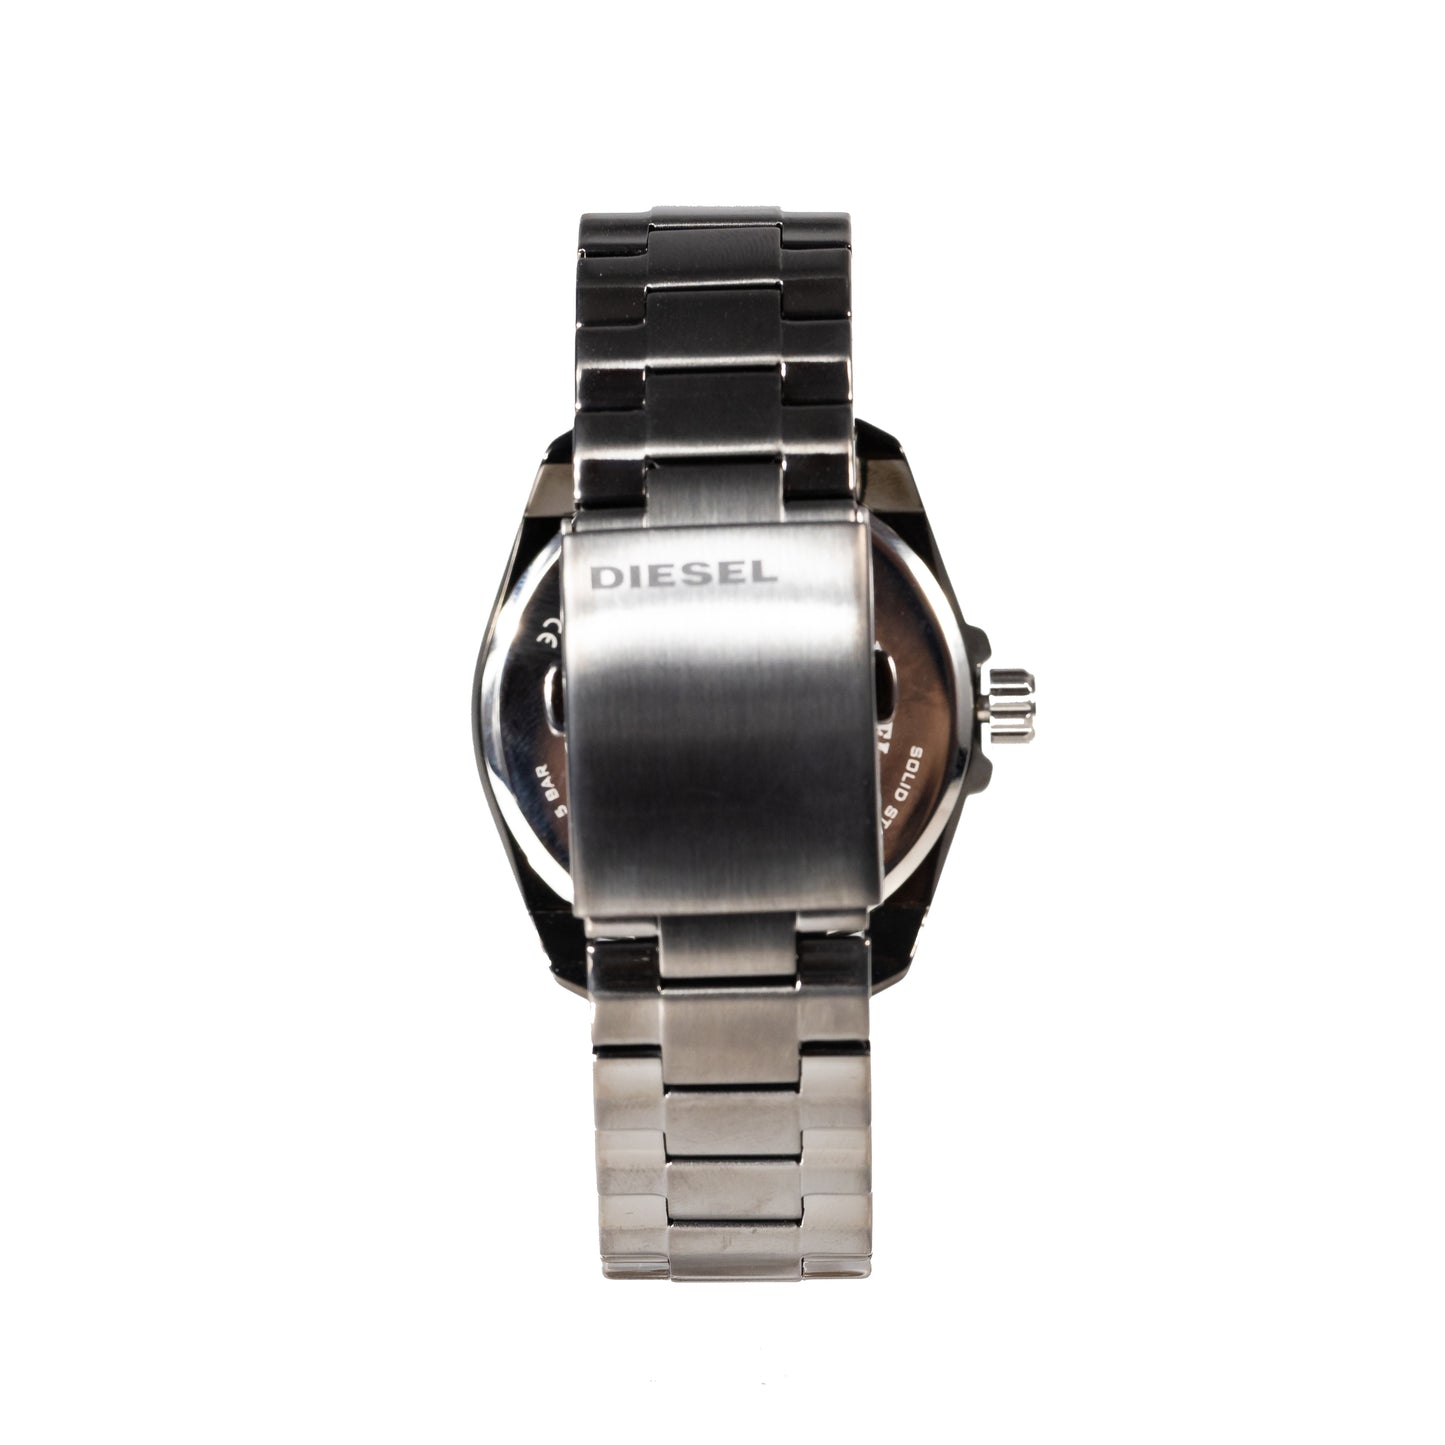 Diesel Men's MS9 Analog Display Quartz Grey Watch - DZ1864 - 698615128518